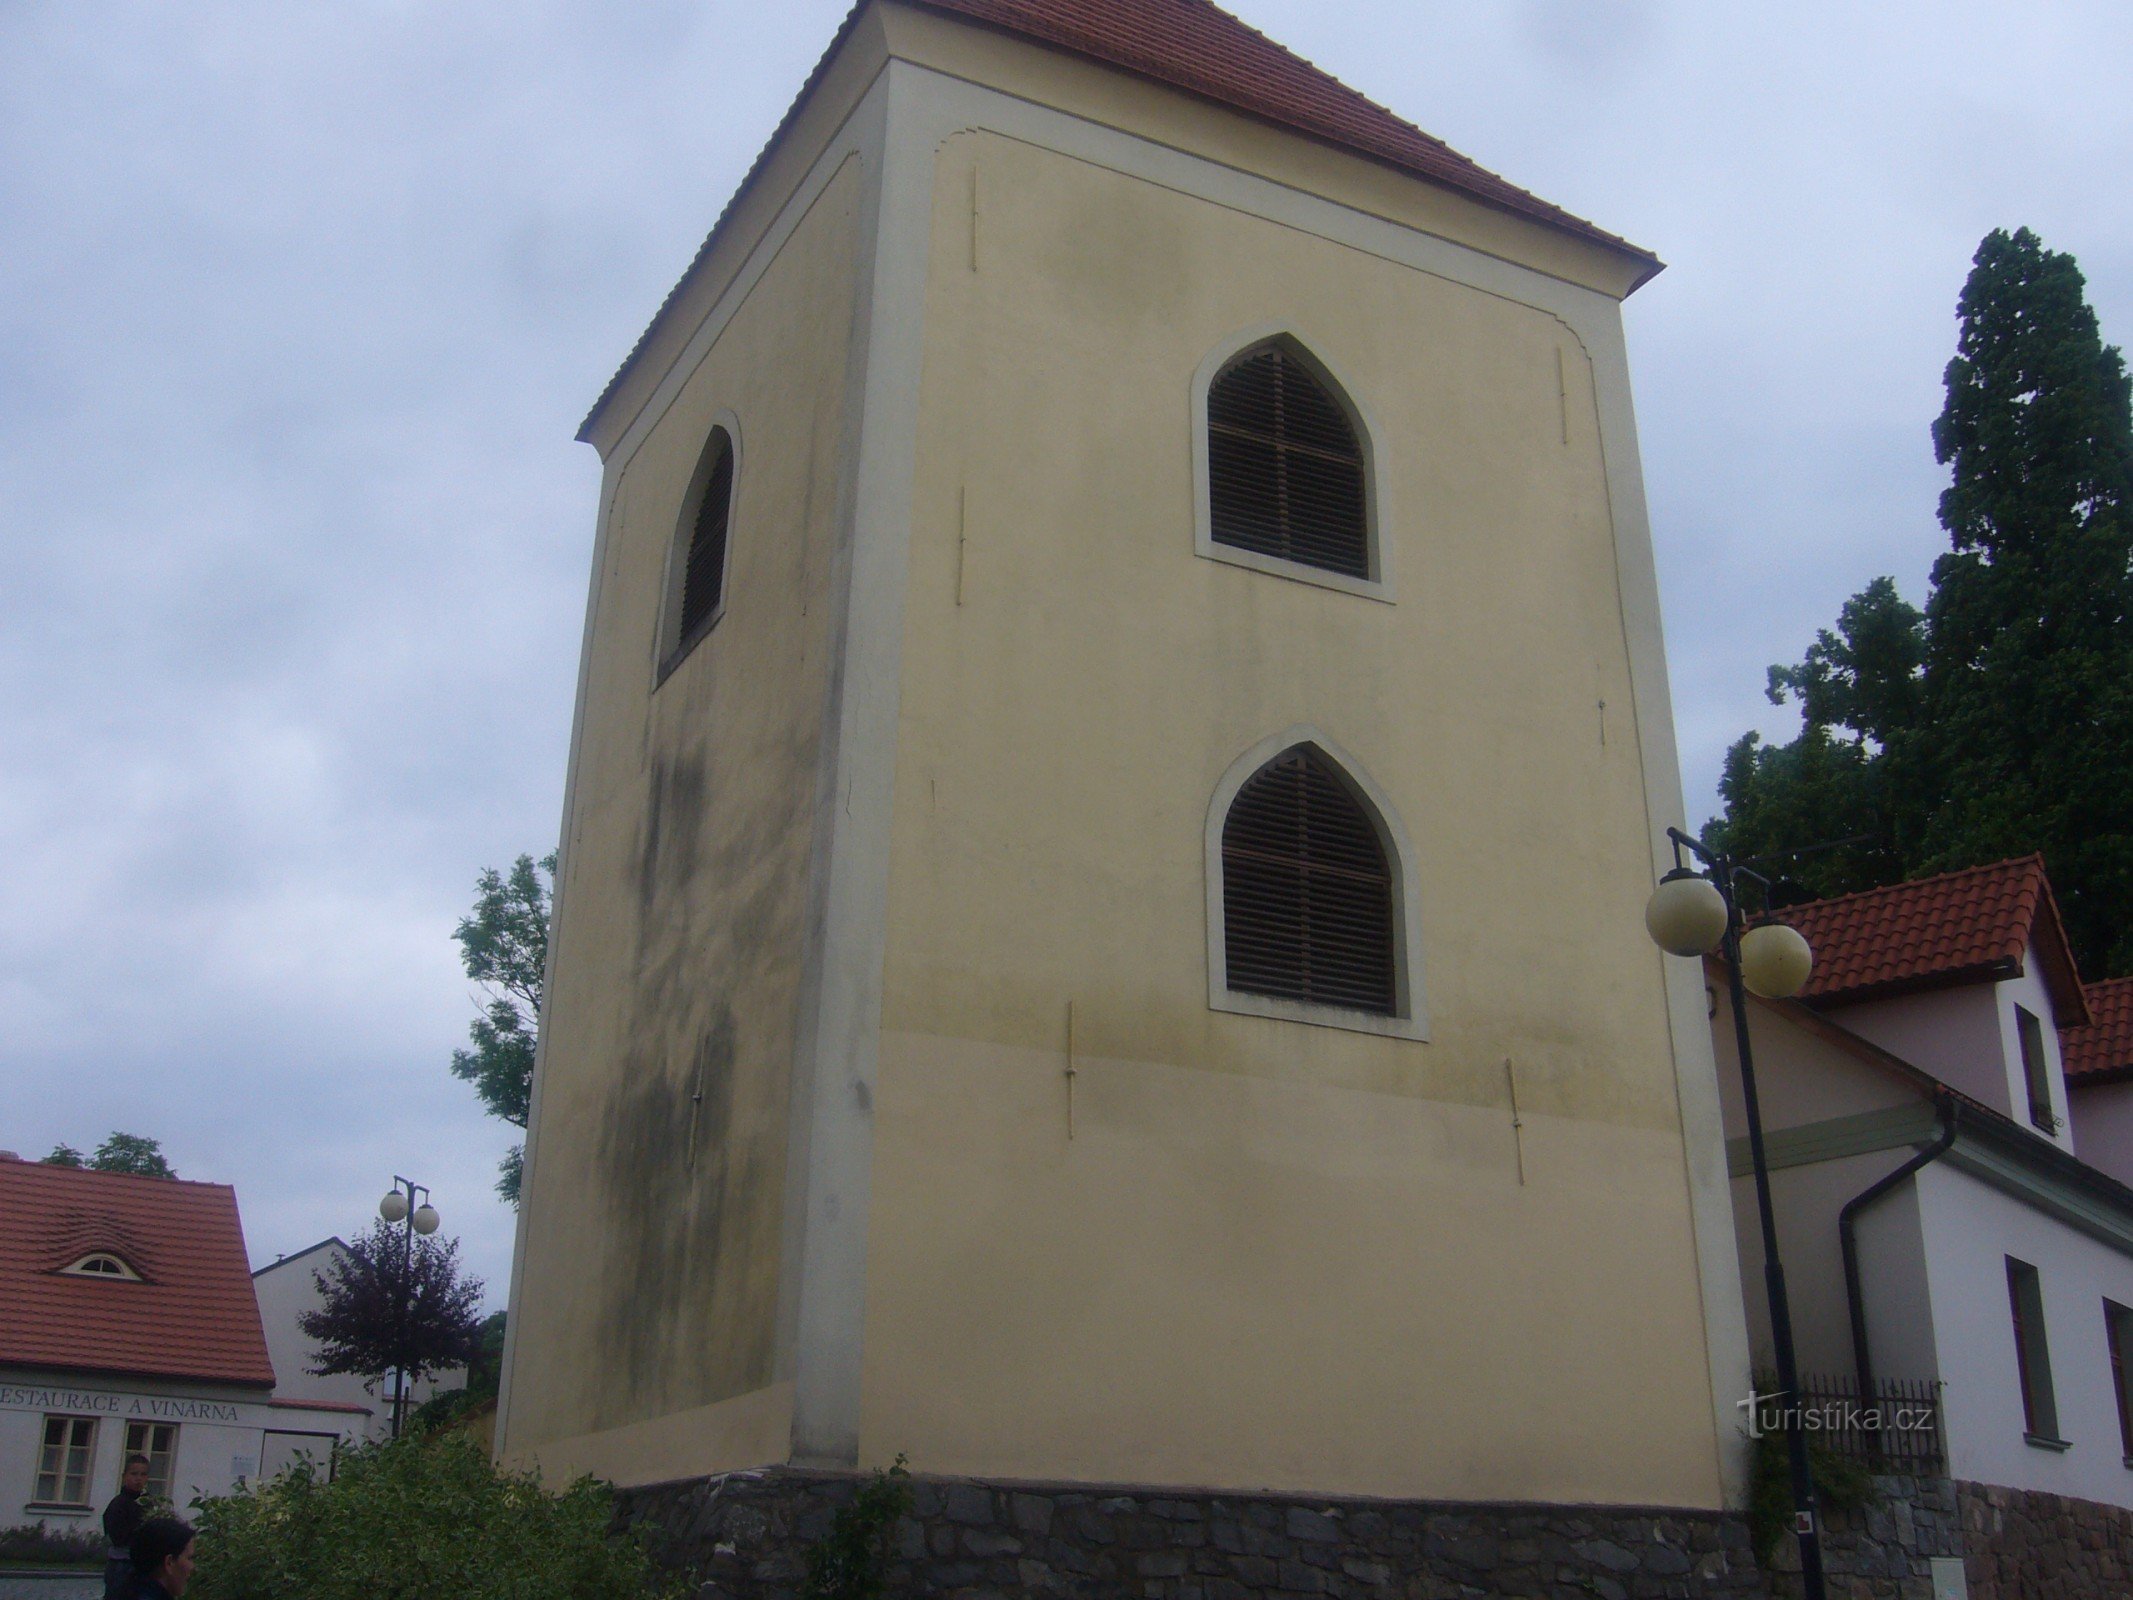 Lâu đài Konopiště